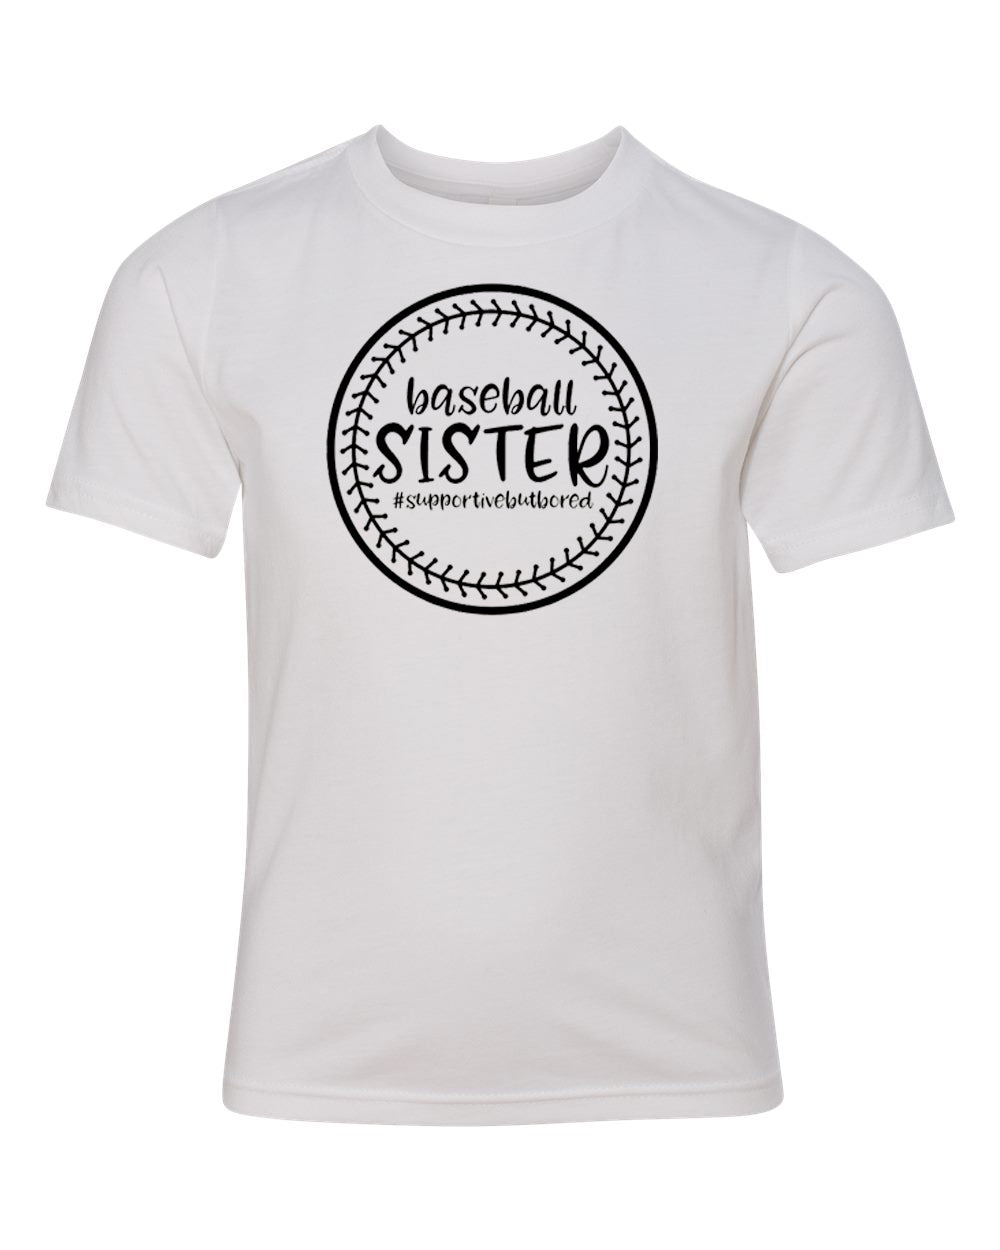 Baseball Sister Youth T-Shirt